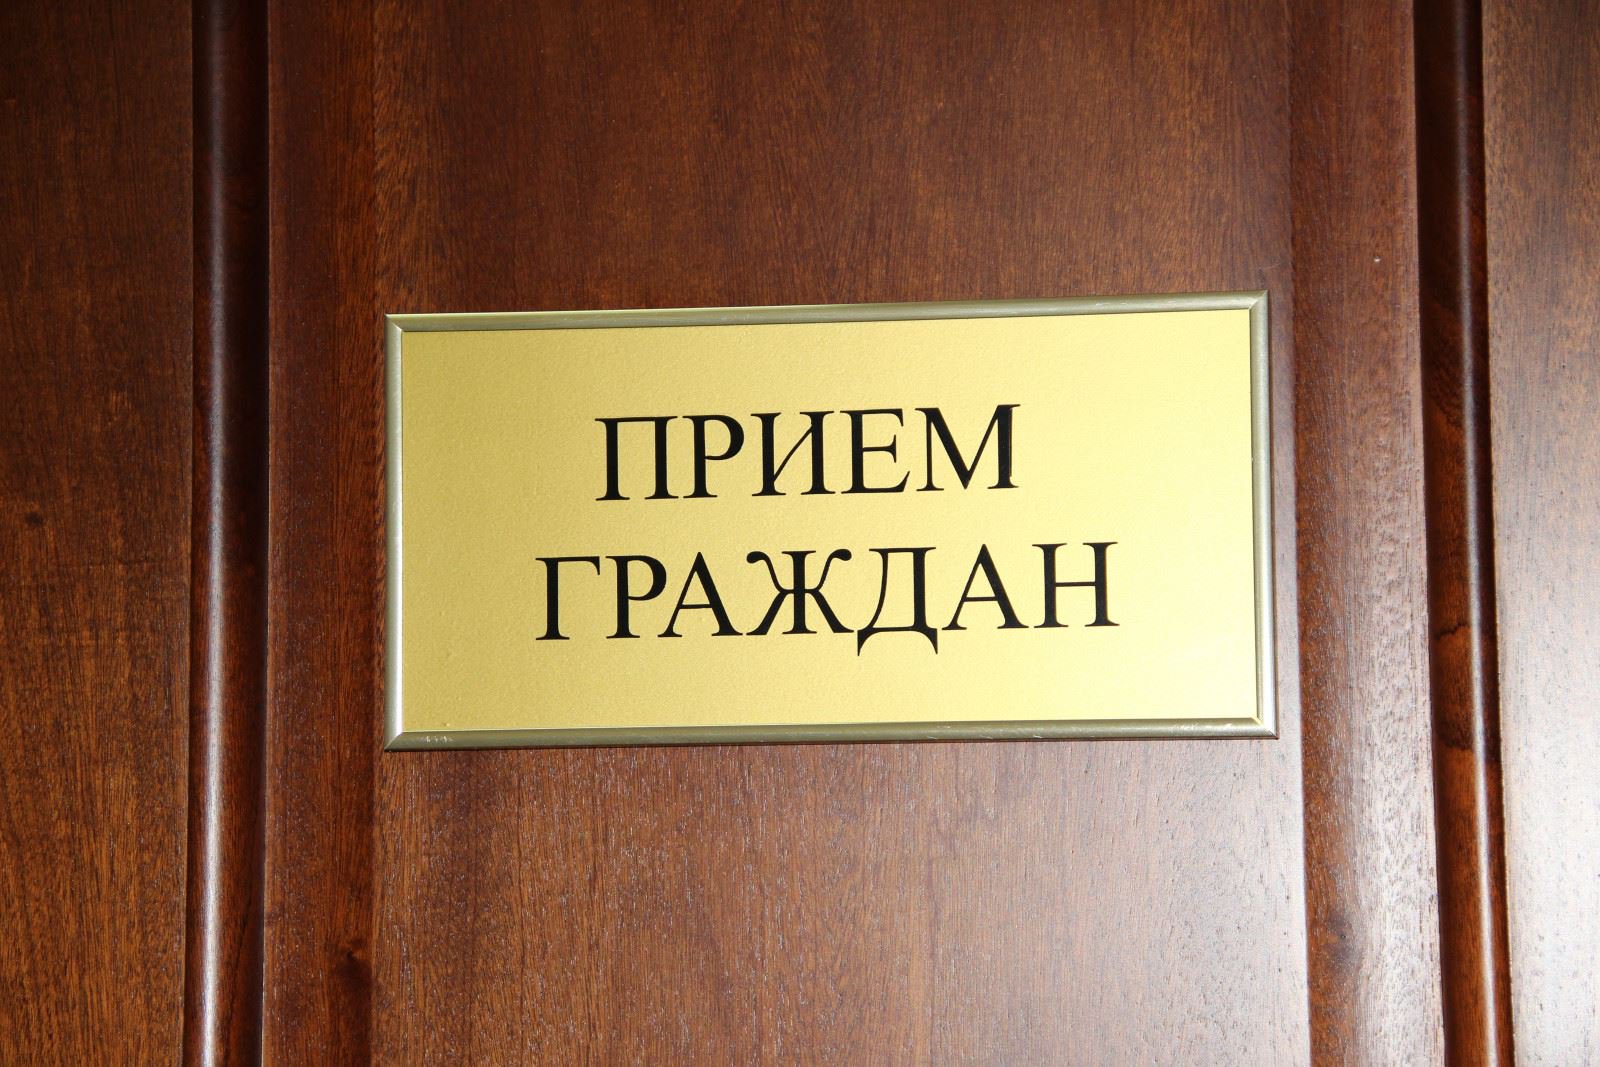 Председатель Комитета государственного контроля Минской области проведет "прямую линию" и прием граждан в Крупском райисполкоме